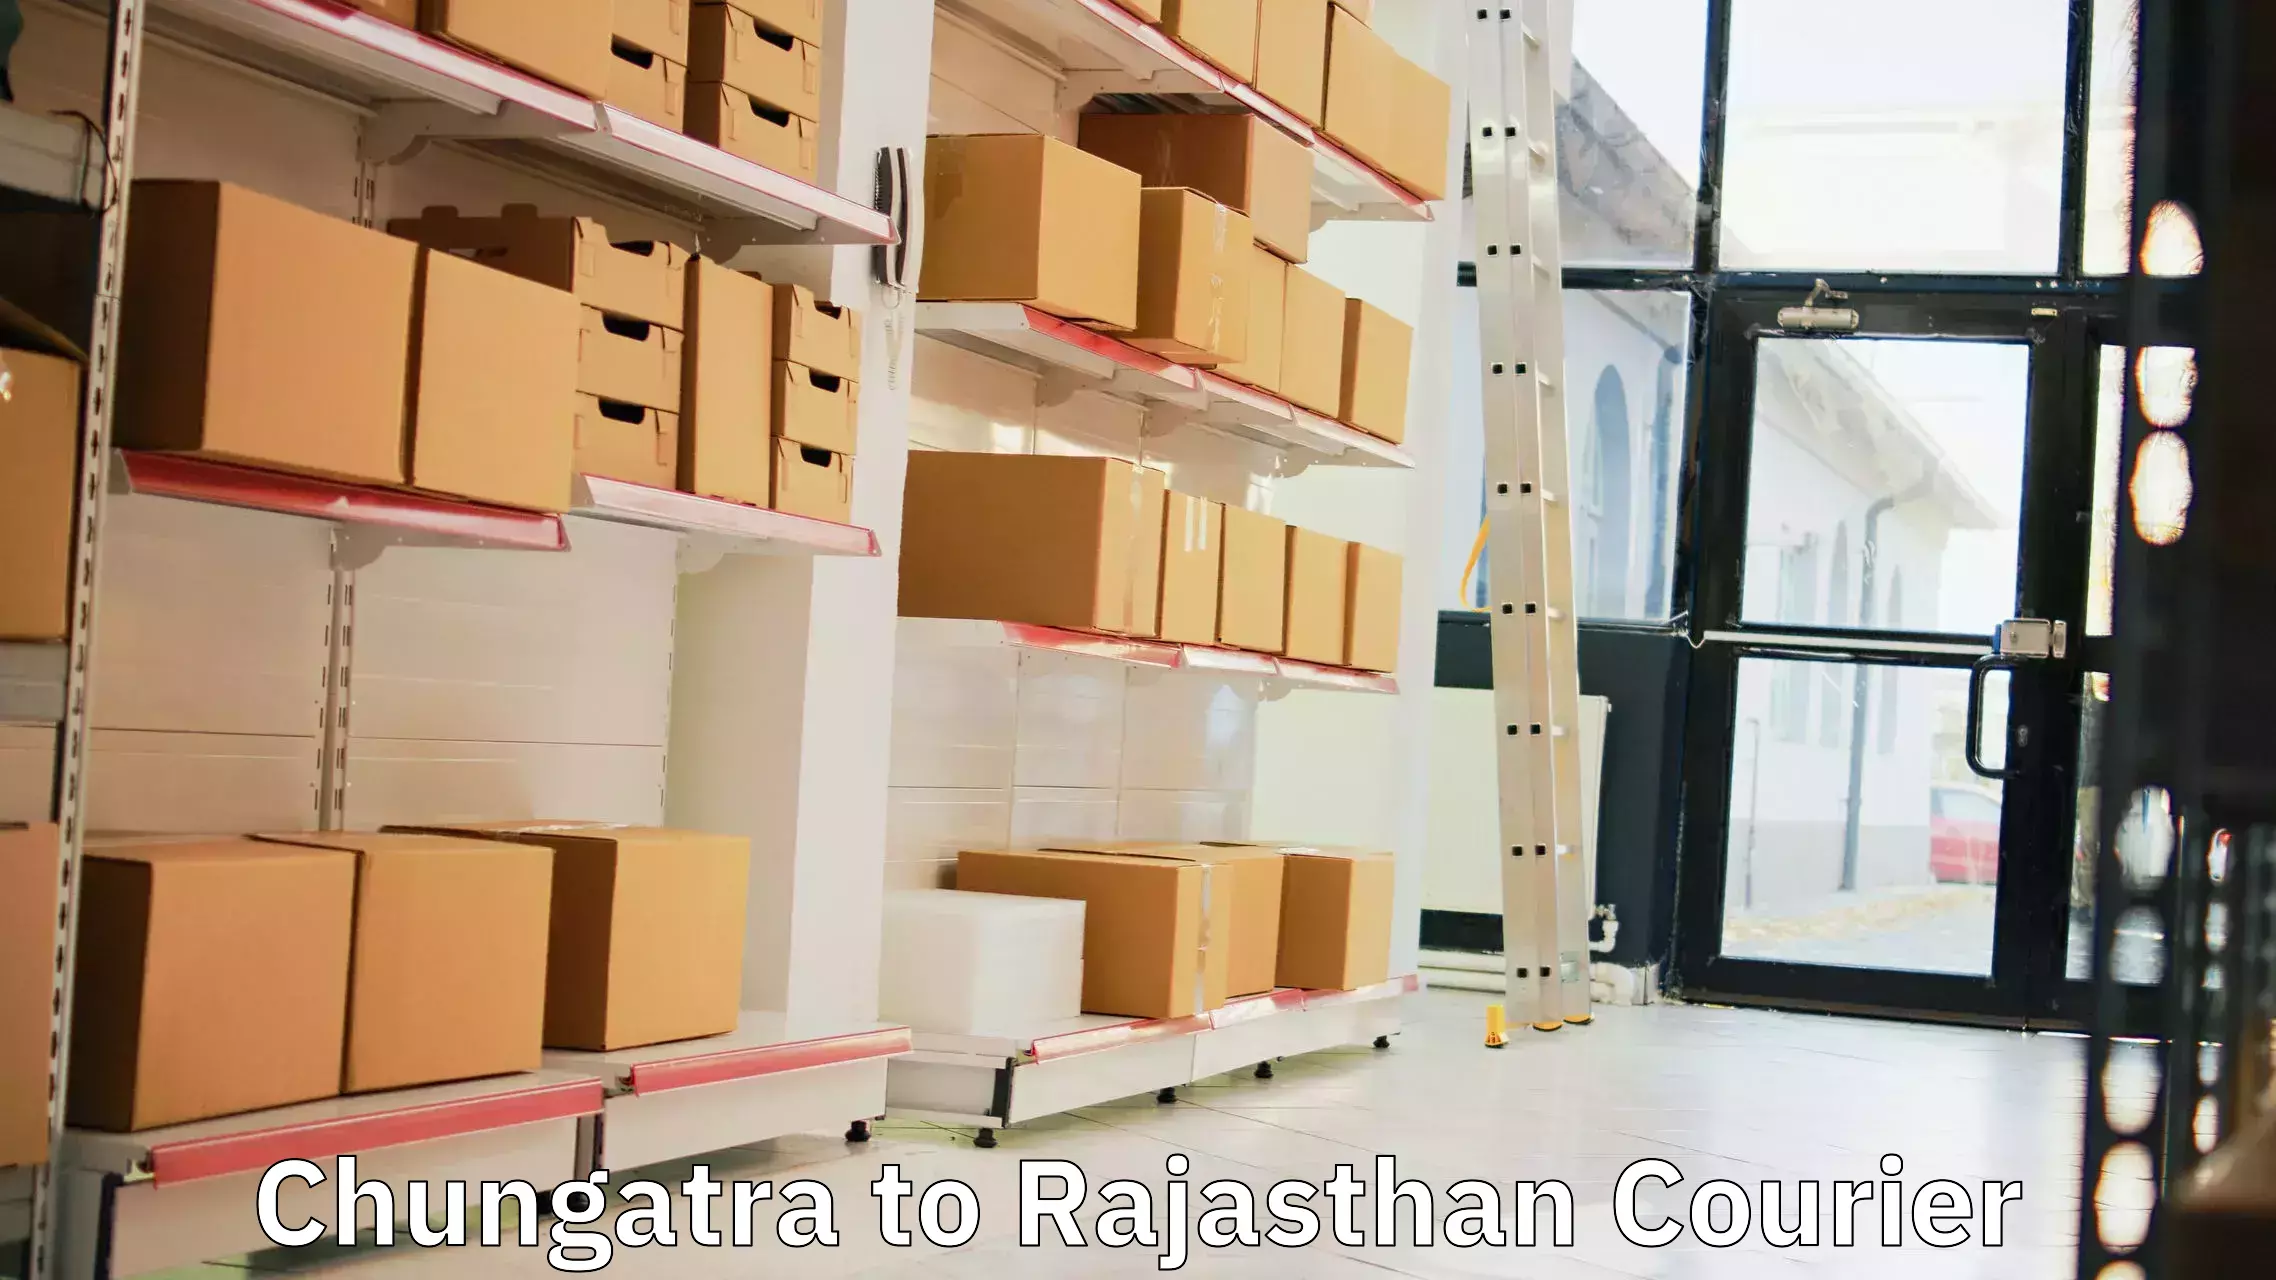 Regular parcel service Chungatra to Rajsamand